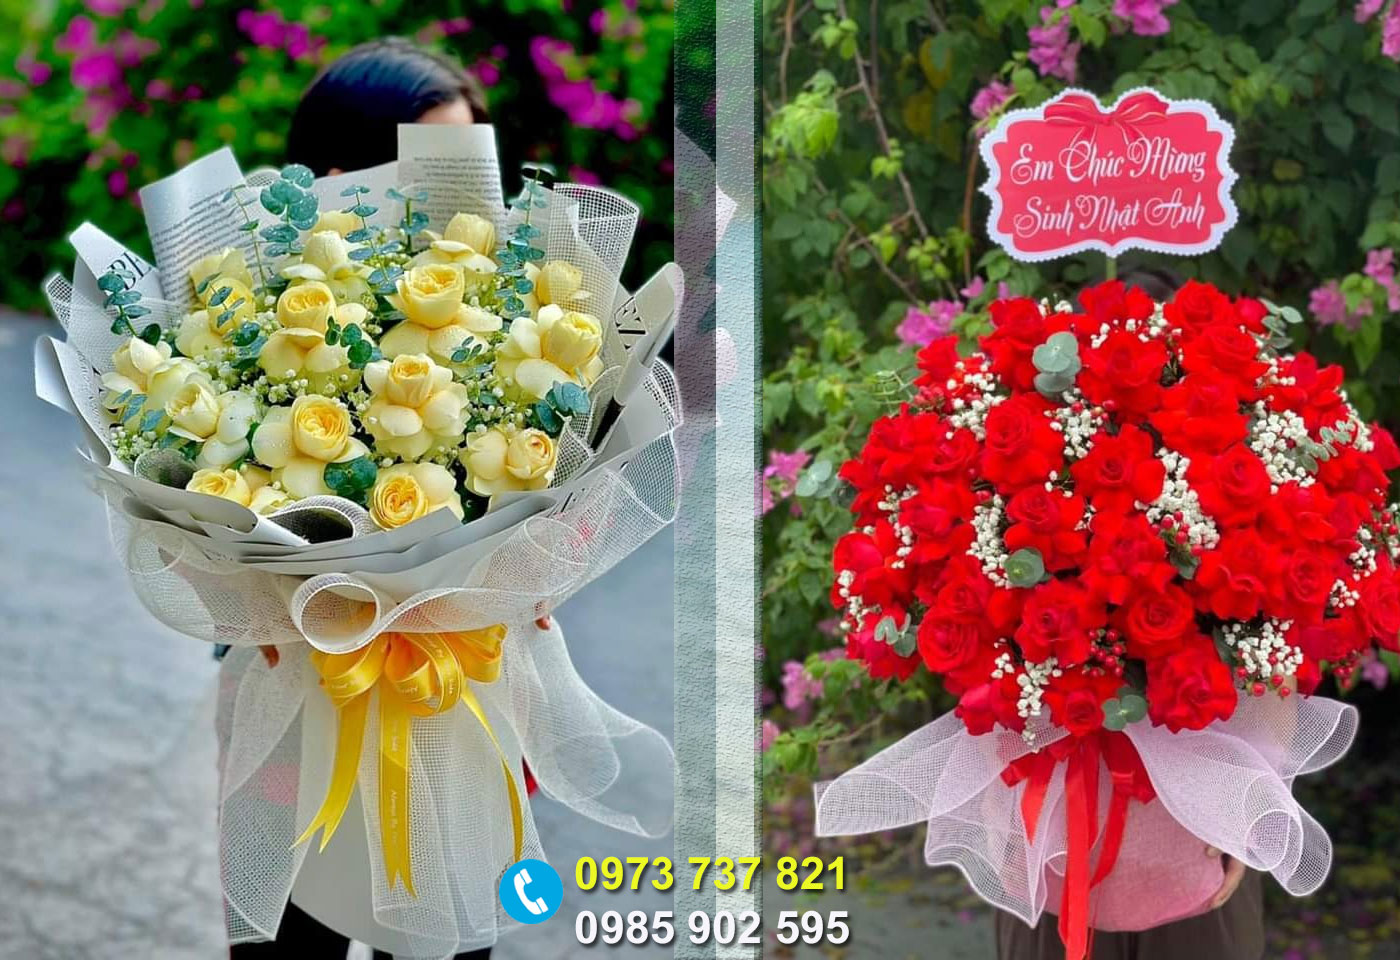 Địa chỉ bán hoa tươi đẹp ở Thọ Xuân Thanh Hóa